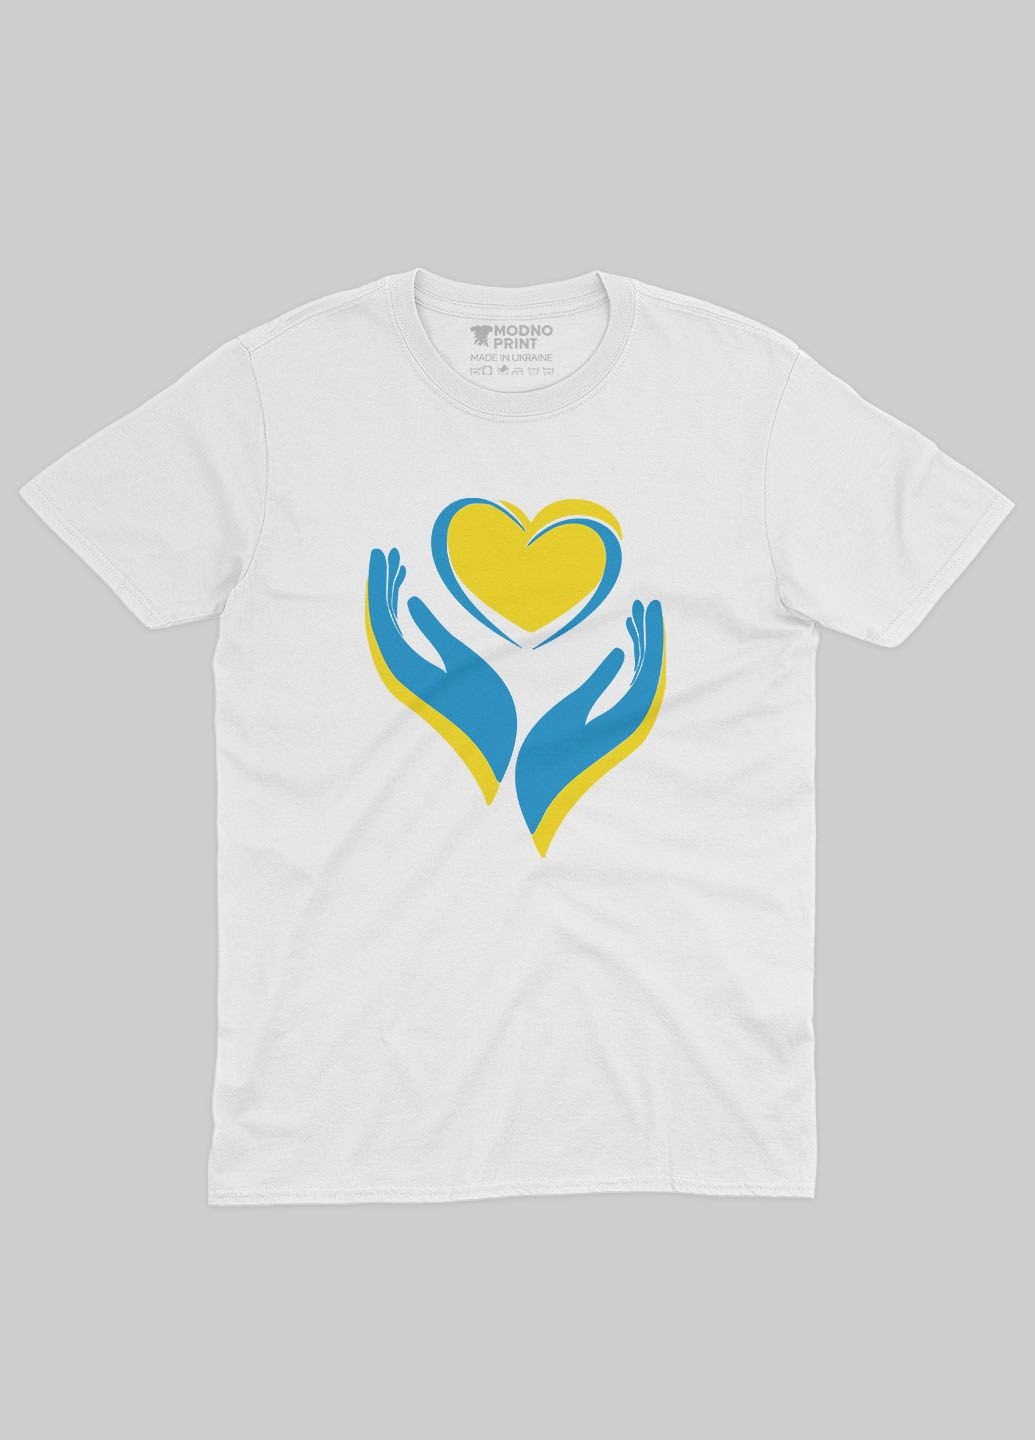 Біла демісезонна футболка для хлопчика з патріотичним принтом серце та лодоні (ts001-2-whi-005-1-029) Modno